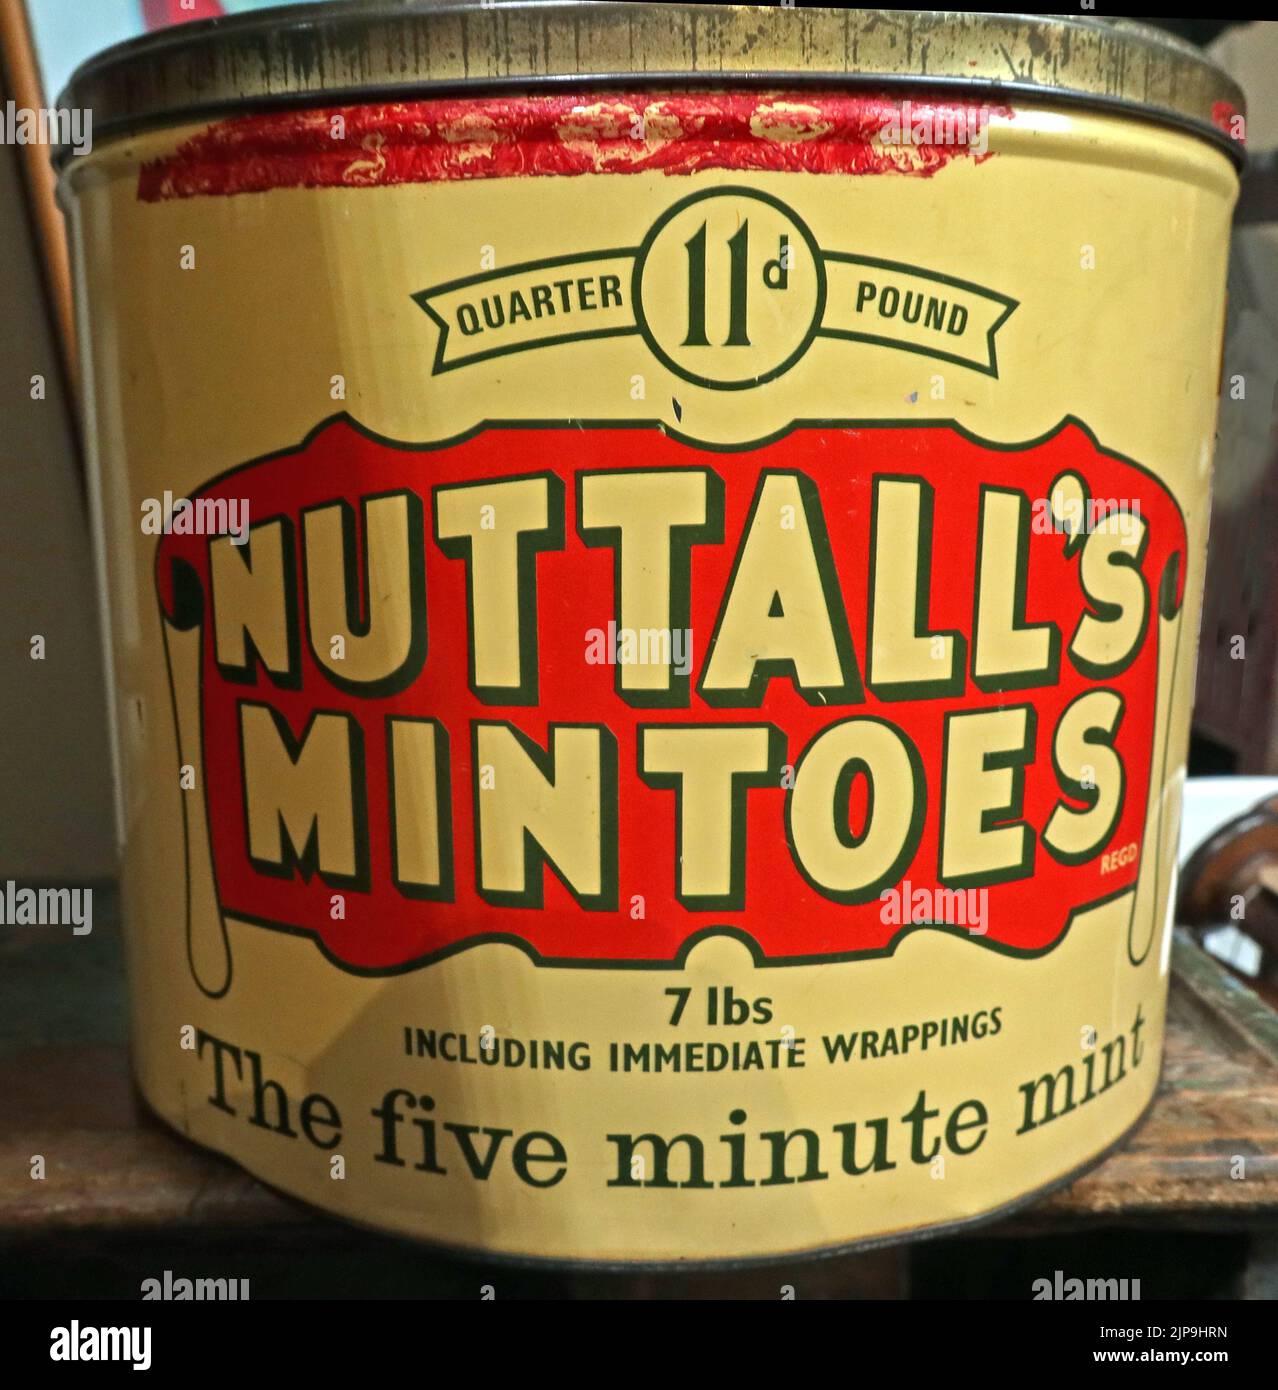 7lb boîtes de Nuttalls Mintoes, la menthe de cinq minutes, les sucreries traditionnelles britanniques, dans un paquet crème et rouge, de 1965 Banque D'Images